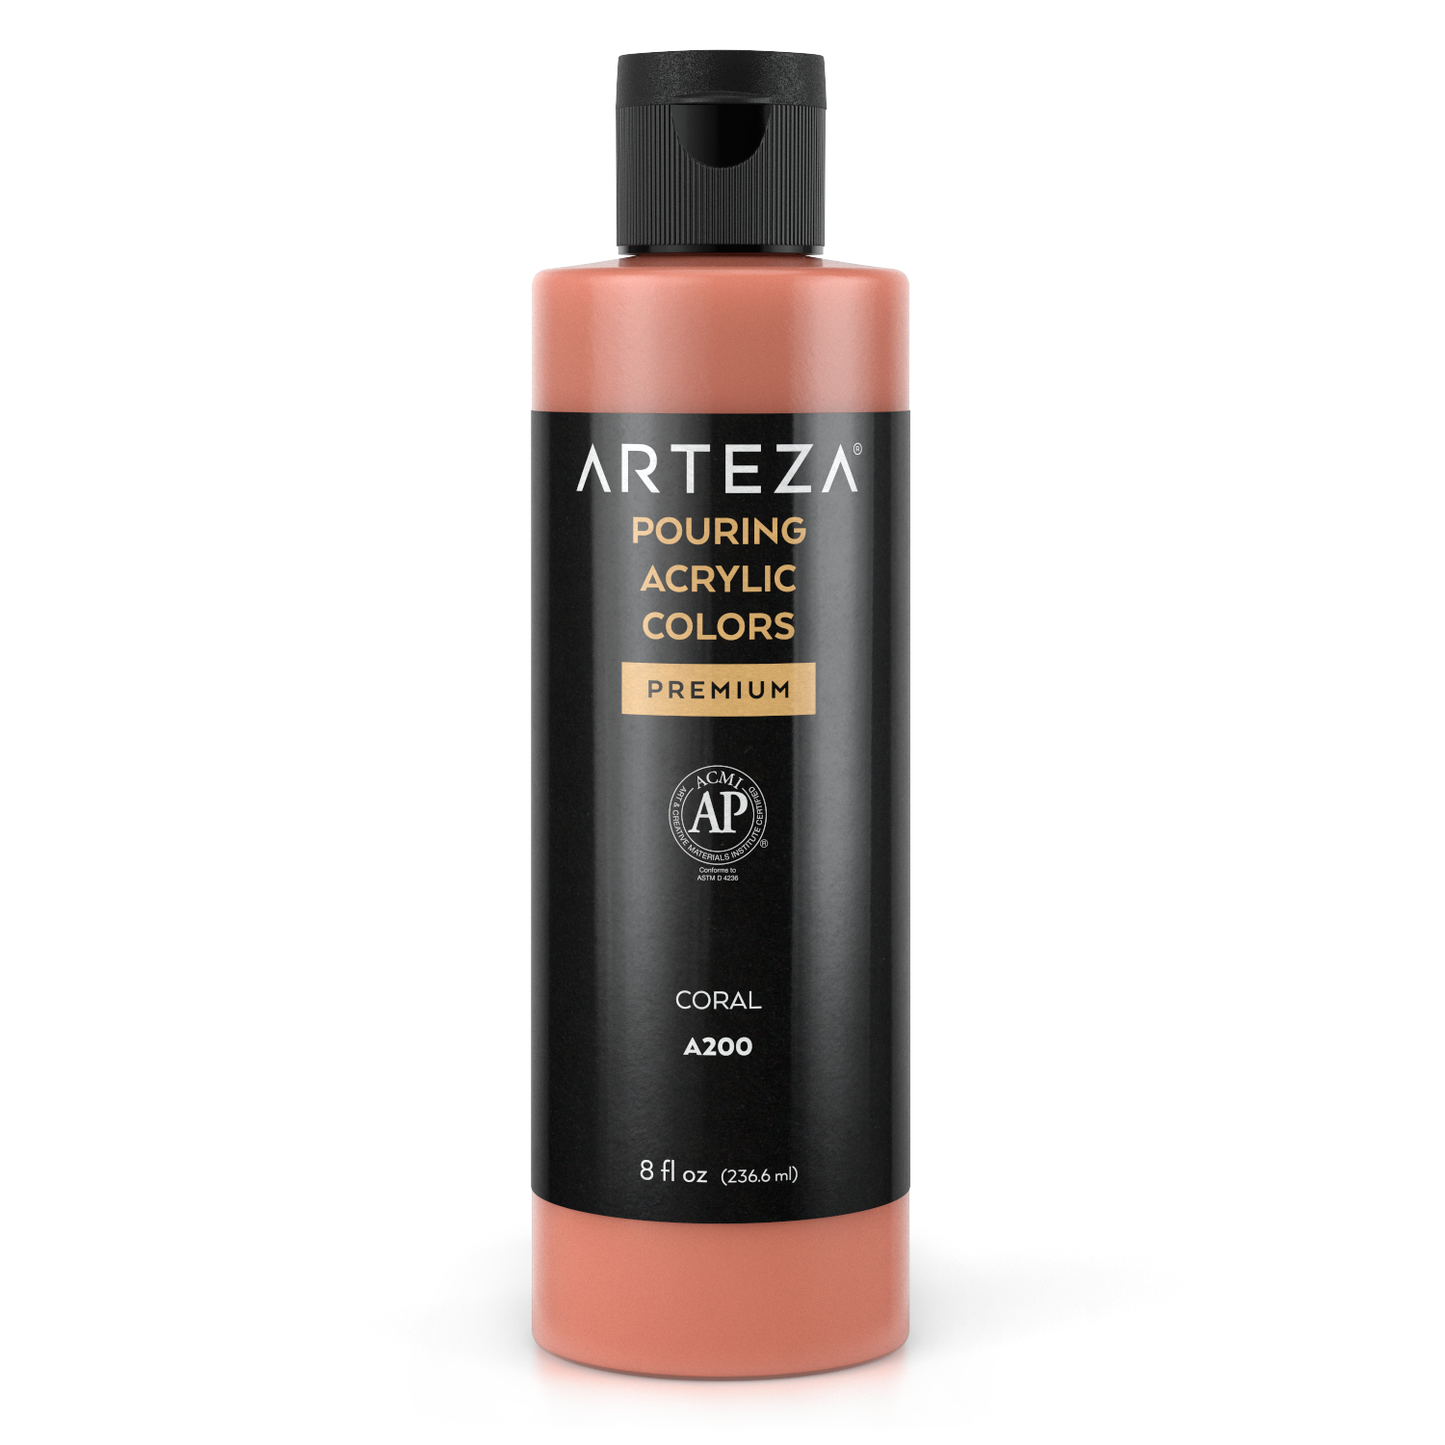 Arteza Pouring Acrylic Paint, 2oz Bottle - Coral